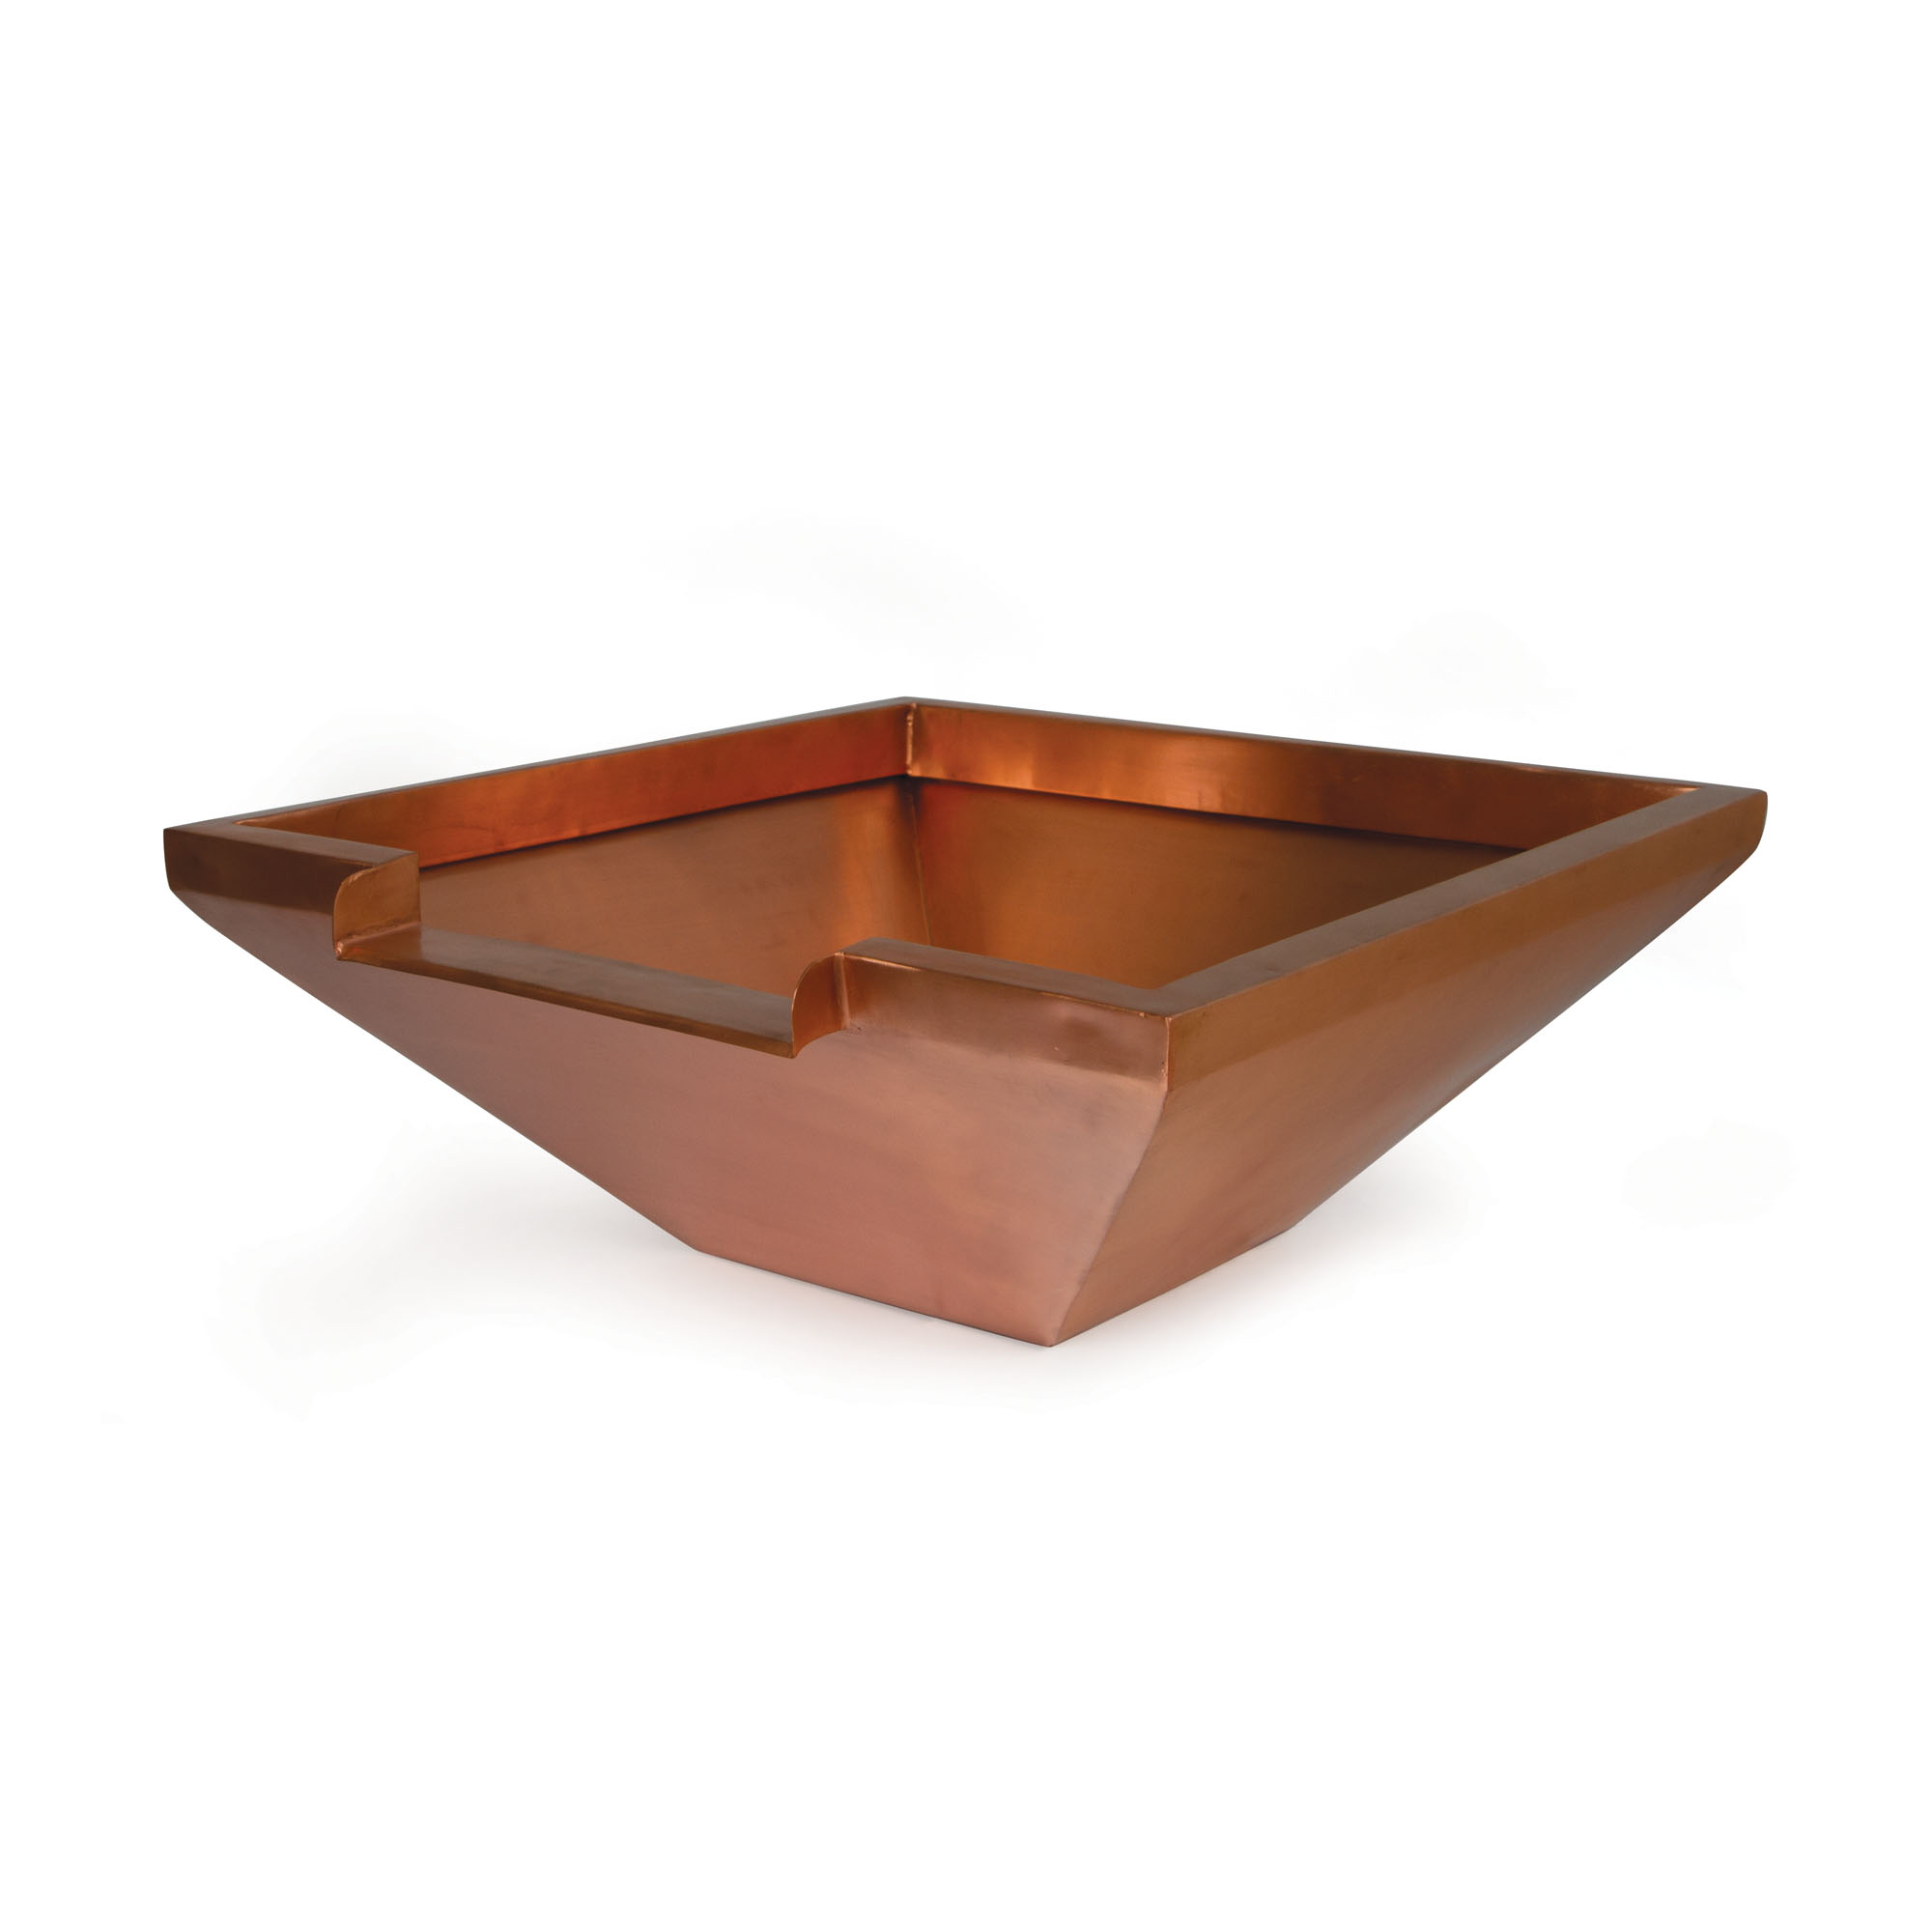 26" Square Copper Bowl w/ Tan Liner